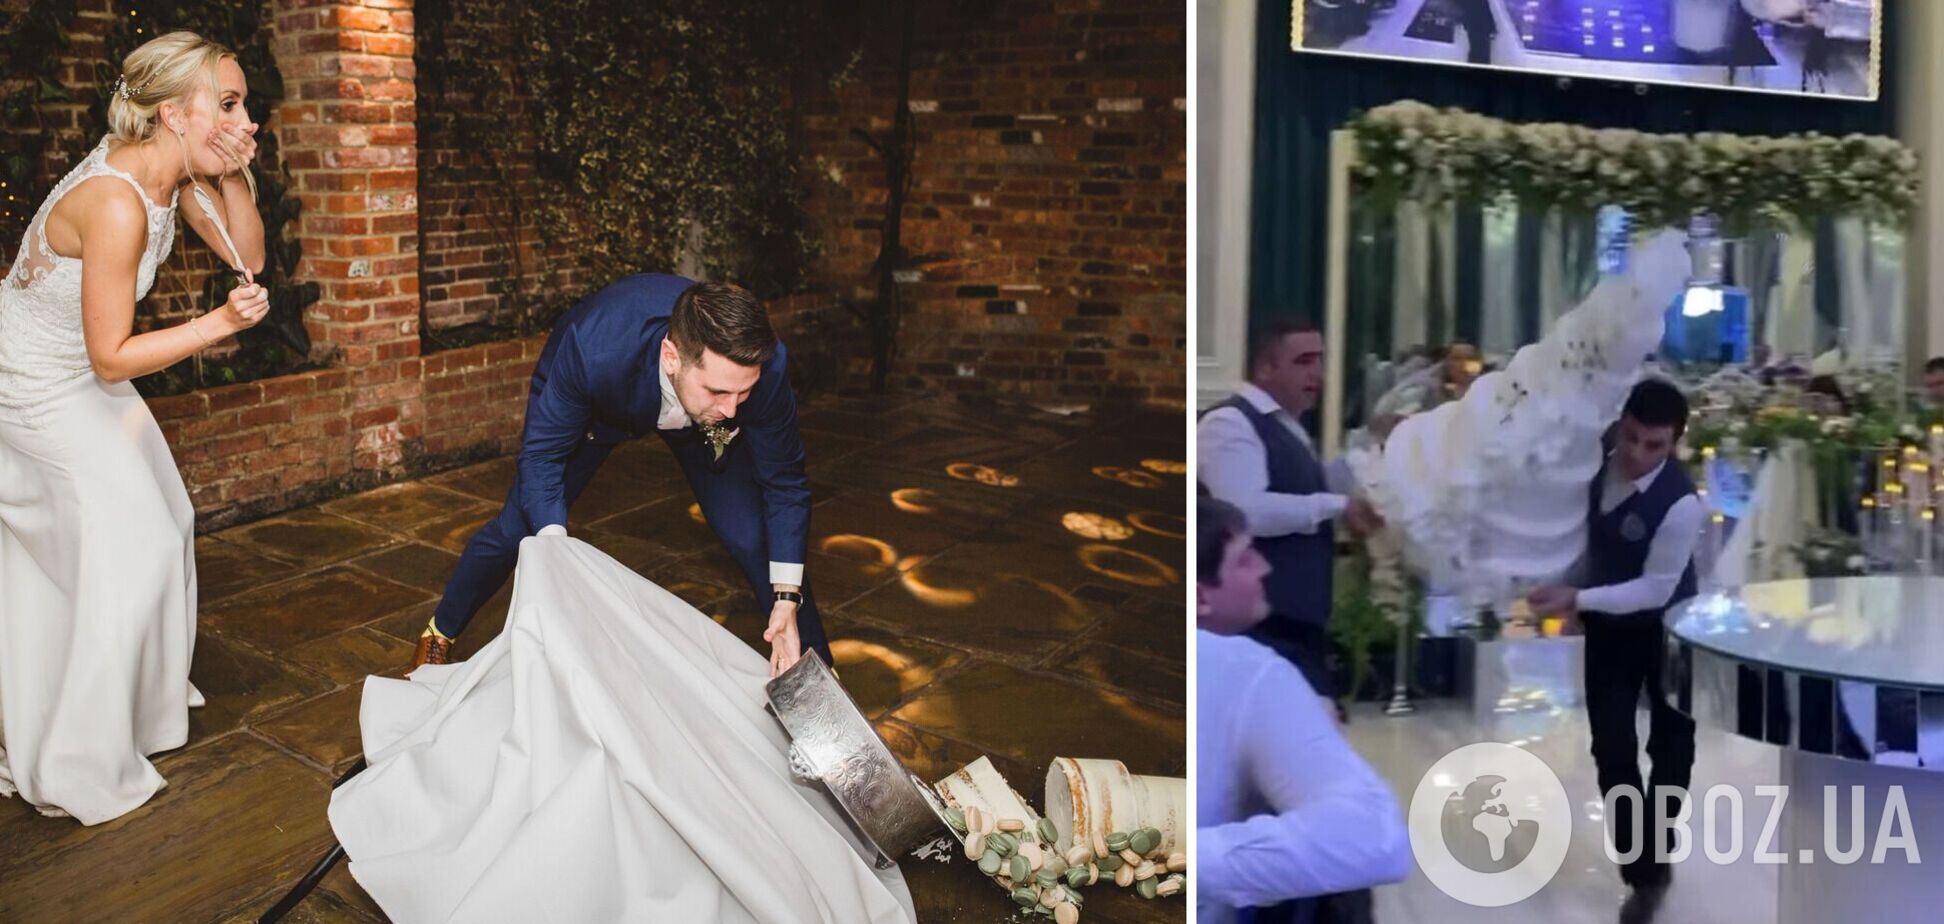 Сотрудники отеля шокировали невесту и жениха, уронив свадебный торт. Вирусное видео